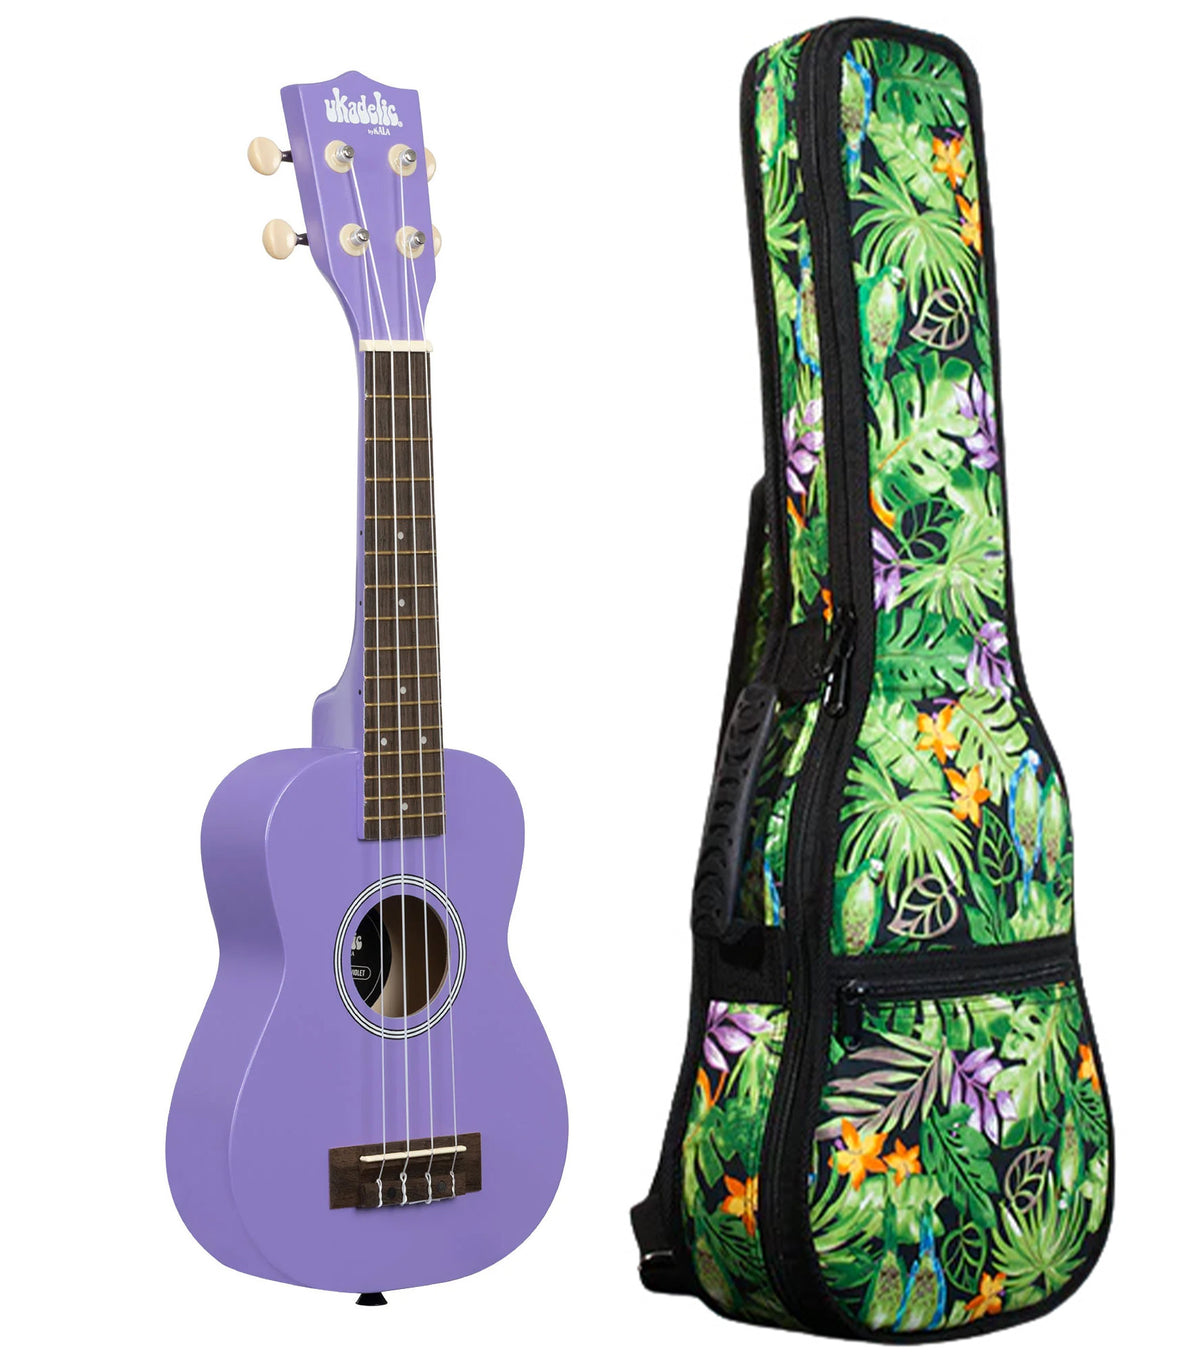 UK-ULTRAVIOLET Ultra Violet Ukadelic Soprano Ukulele Includes Gigbag Floral Print, Padded with Backpack Straps